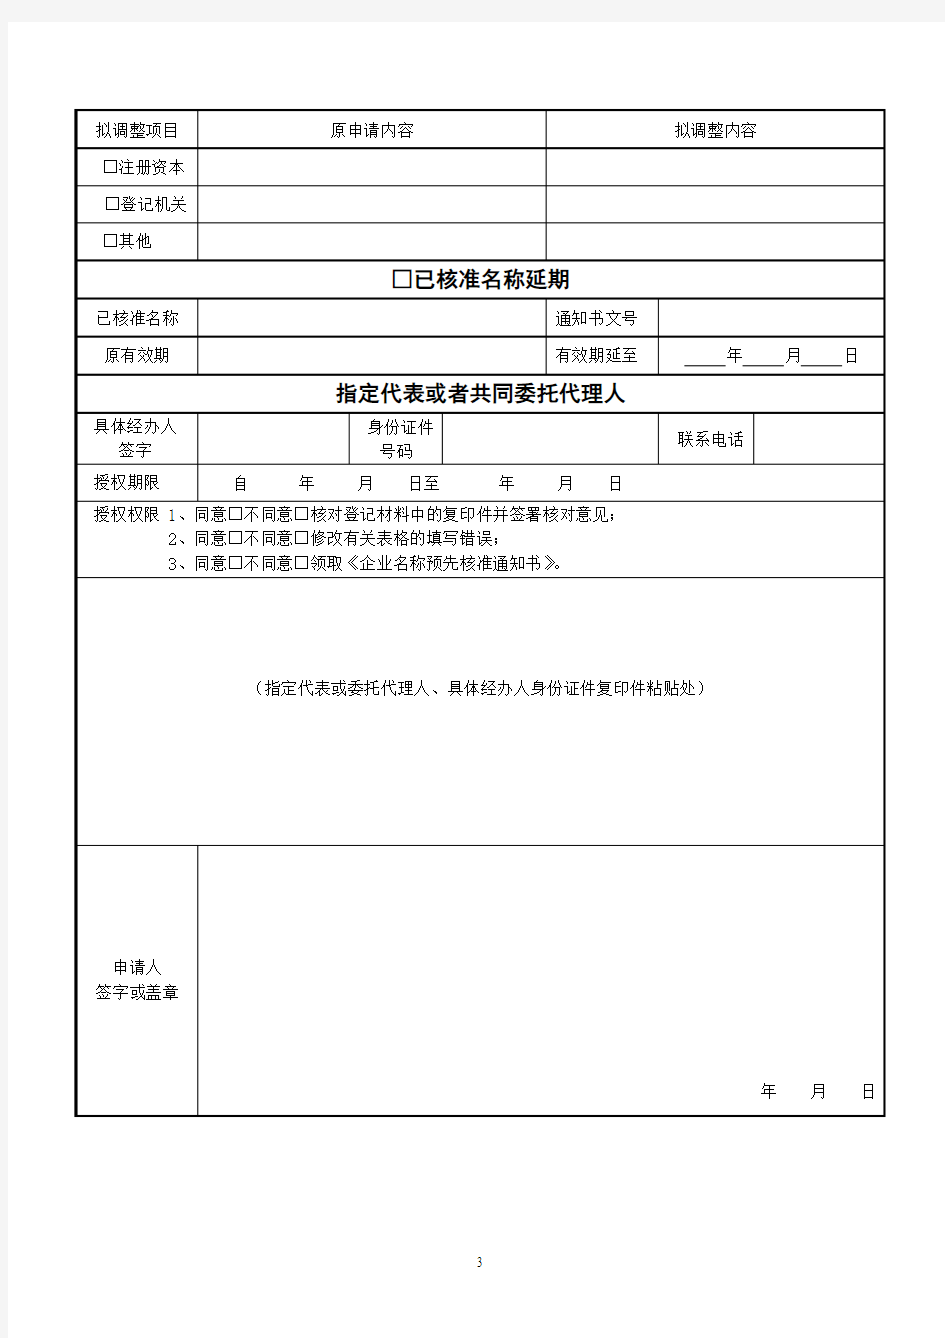 南京市名称预先核准申请书样表